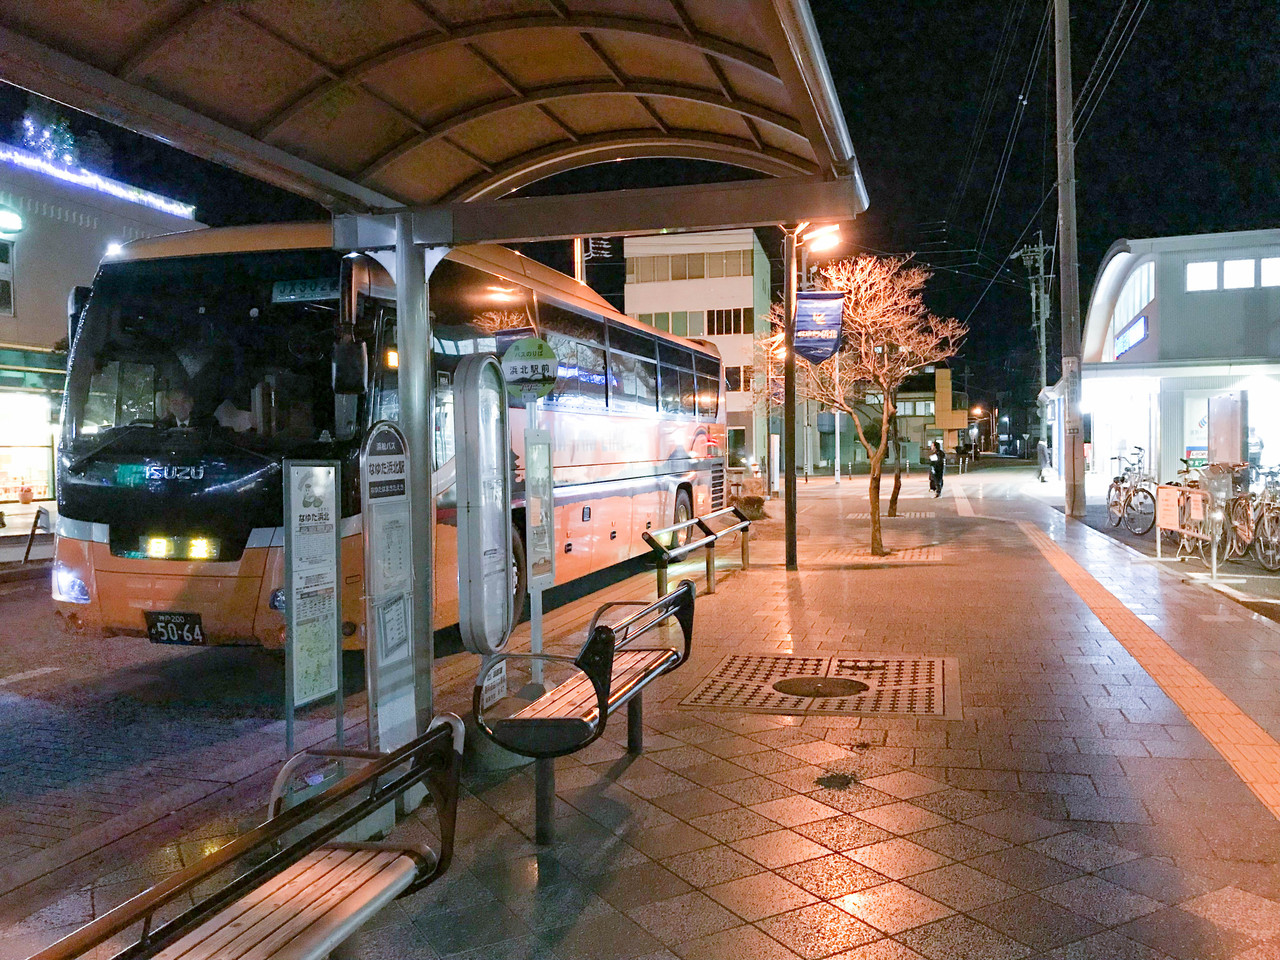 浜北駅前に京都 大阪 梅田 Usj 神戸行きの高速バスのバス停ができてた 1日1本運行の夜行バスが発着してるみたい 浜松つーしん